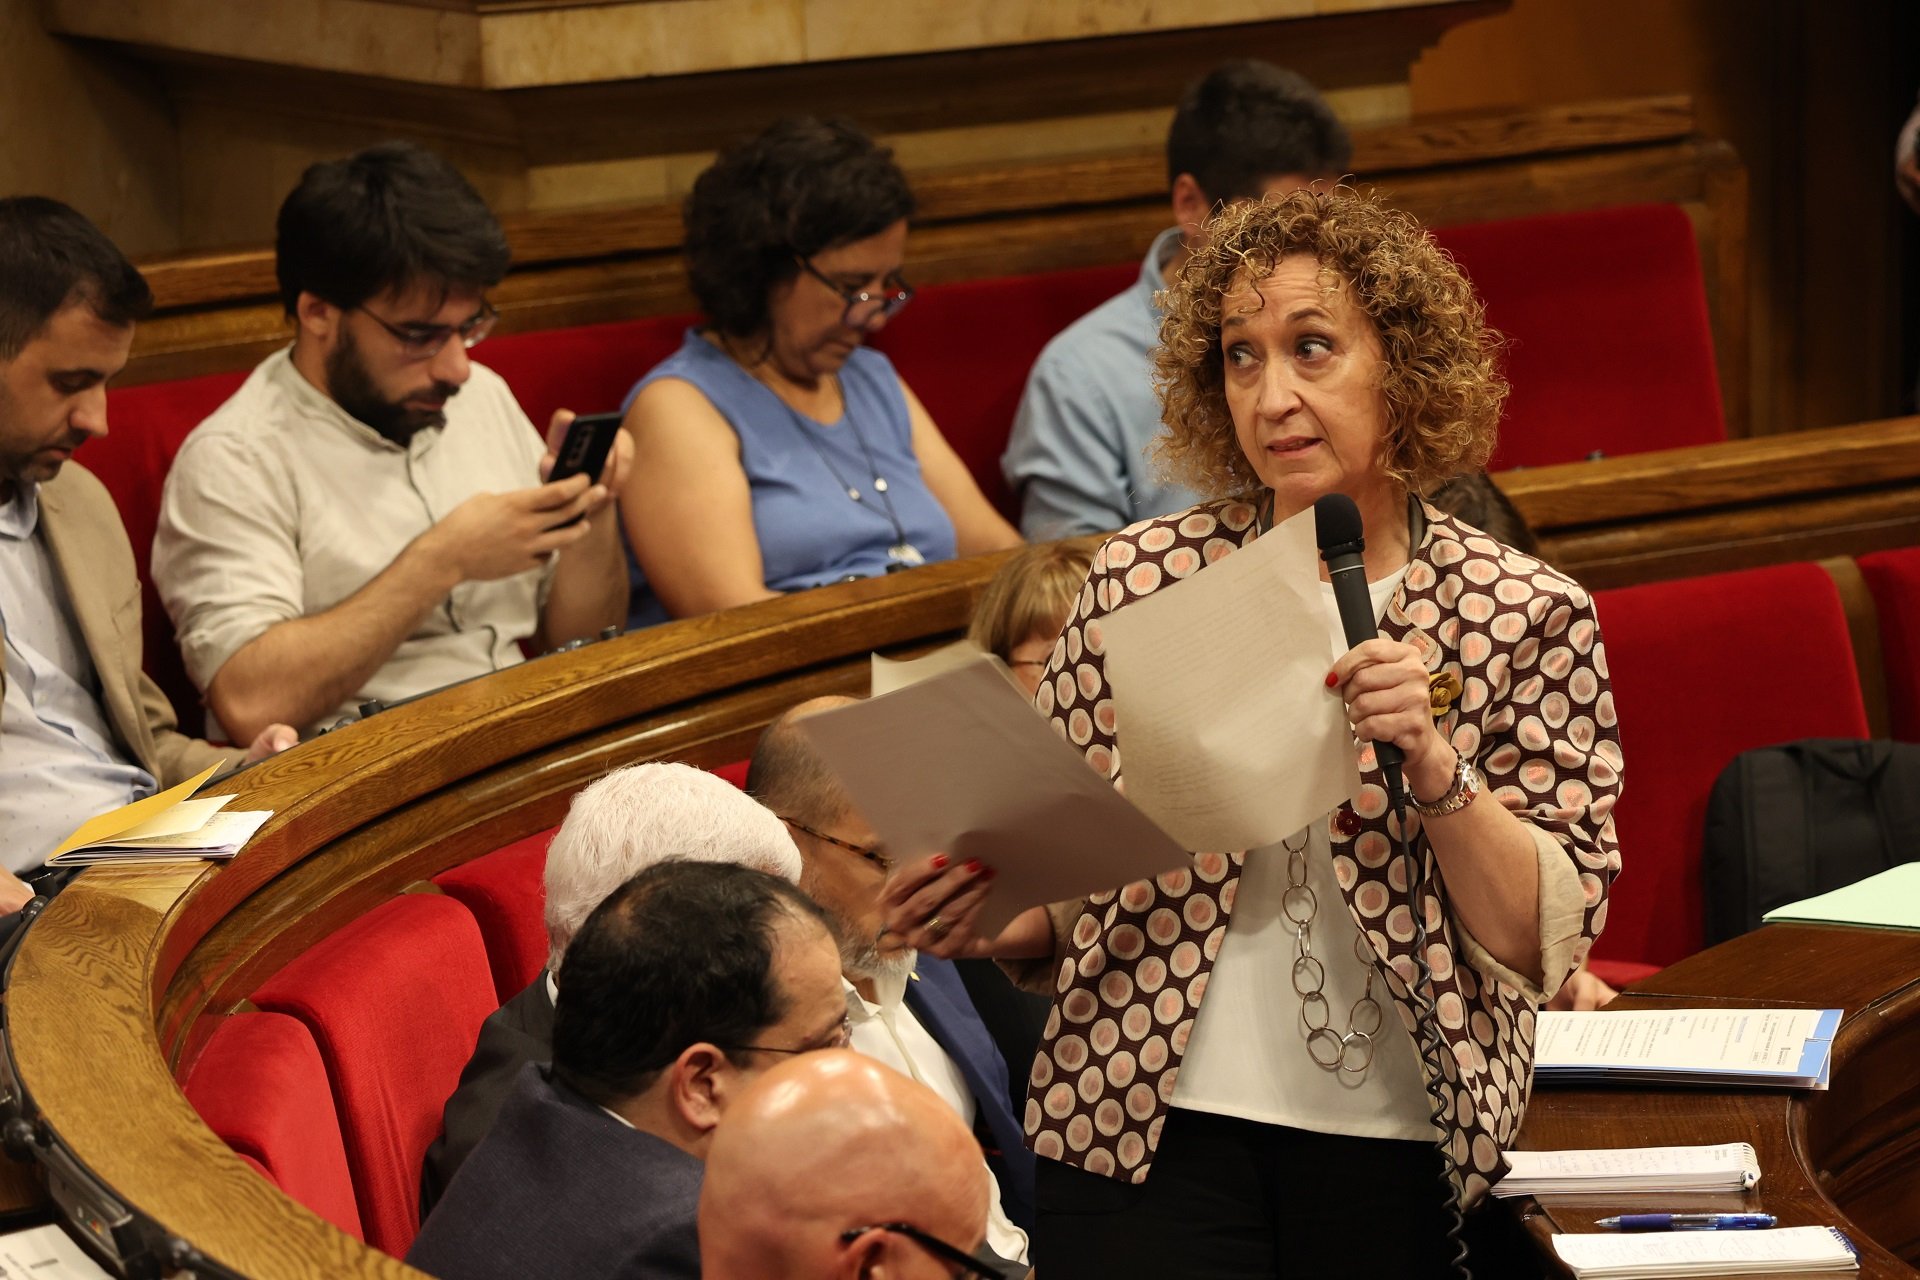 El Govern, davant els retrets per aplicar la llei d'habitatge espanyola: "Cal aprofitar oportunitats"